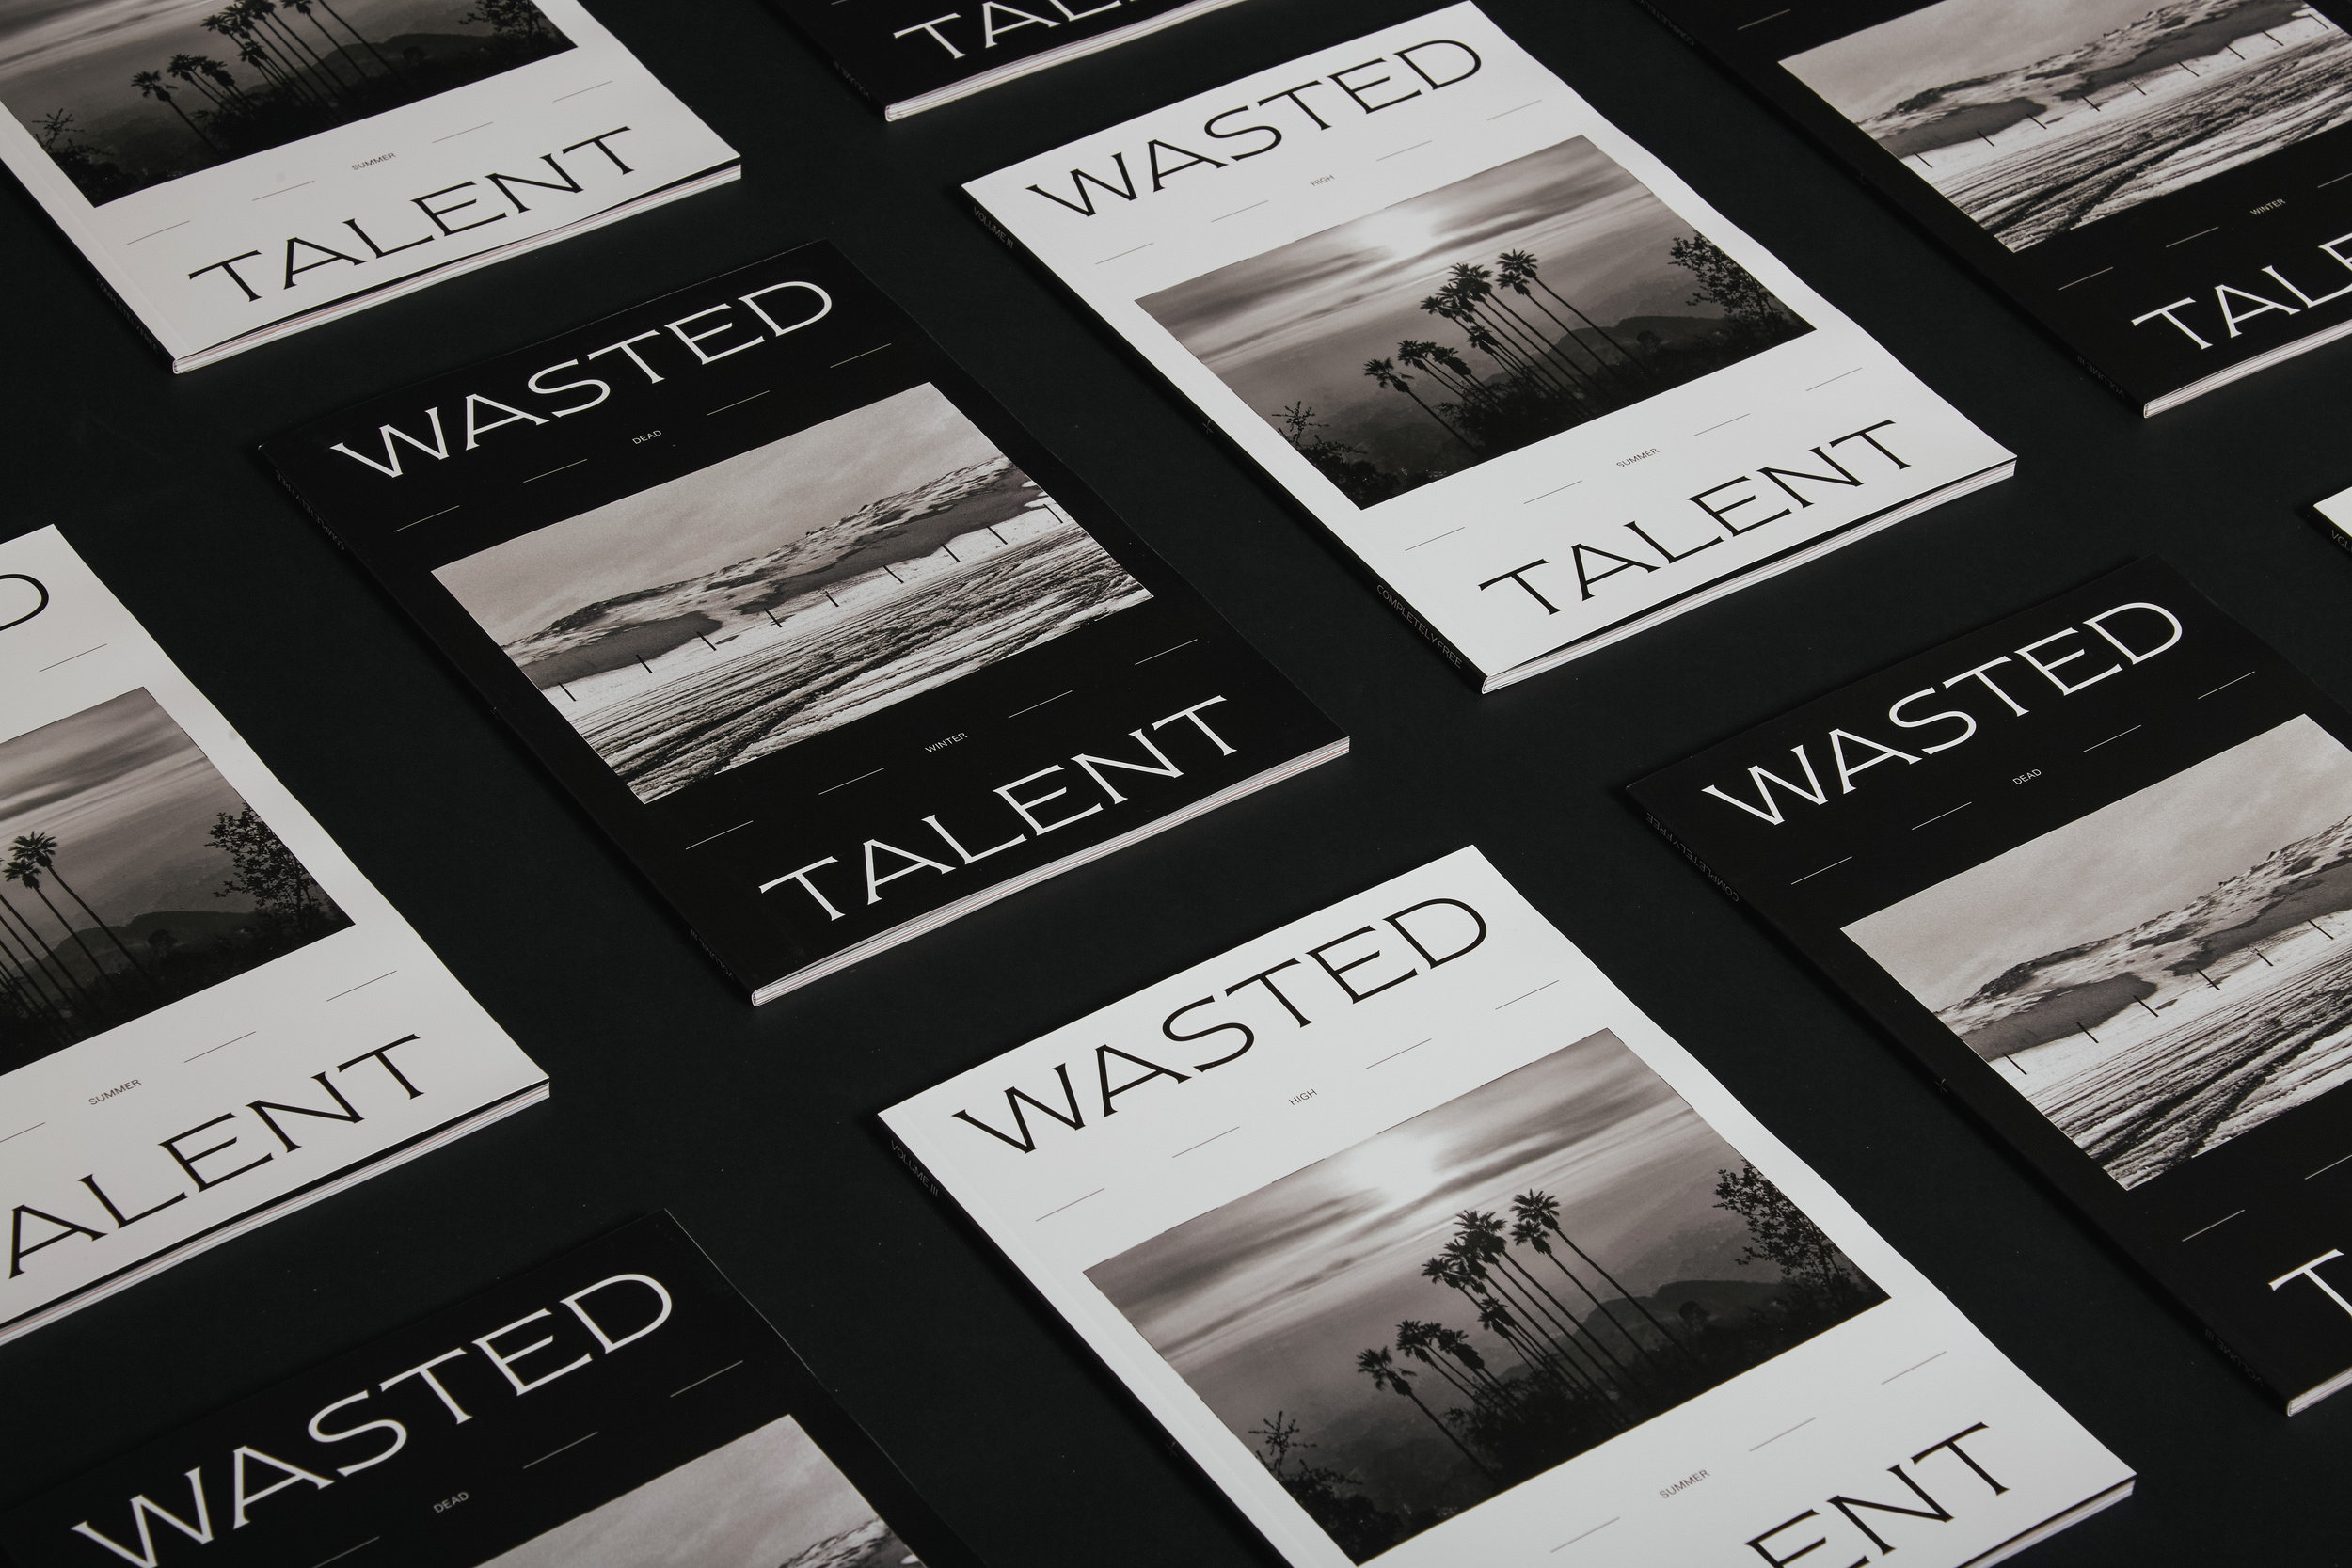 wasted talent vol iii1148.jpg